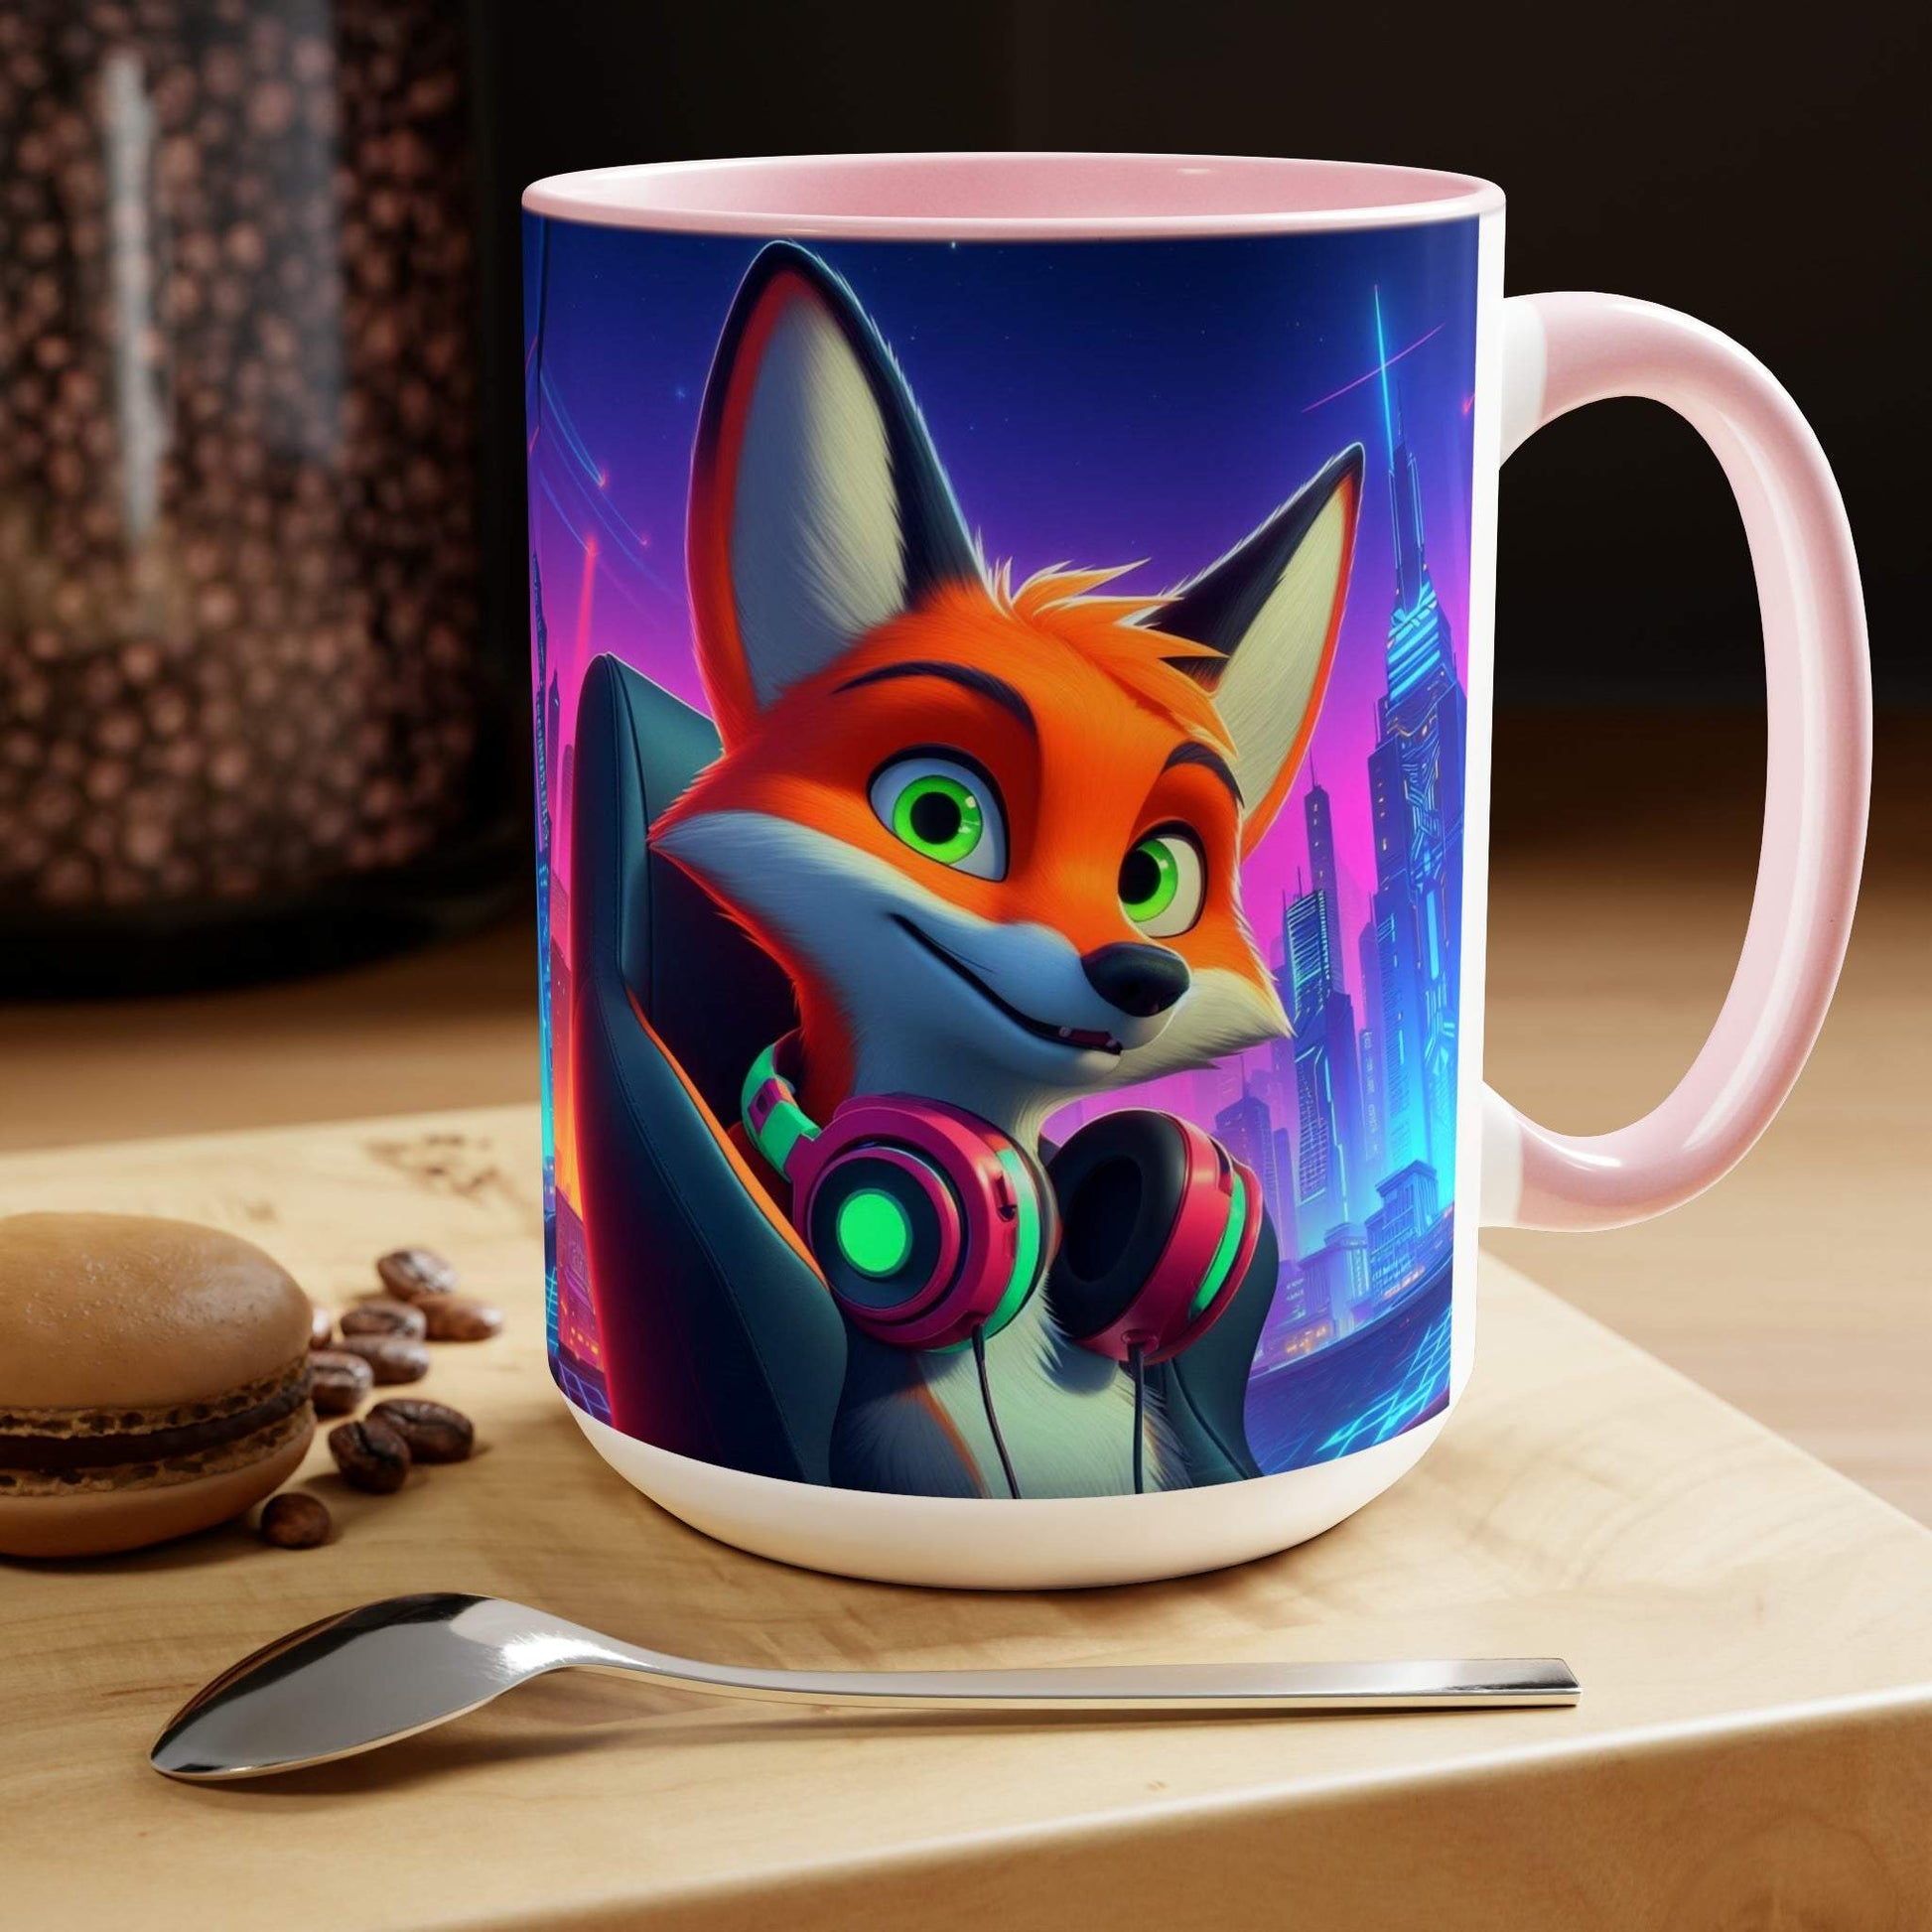 fox mug, gaming mug